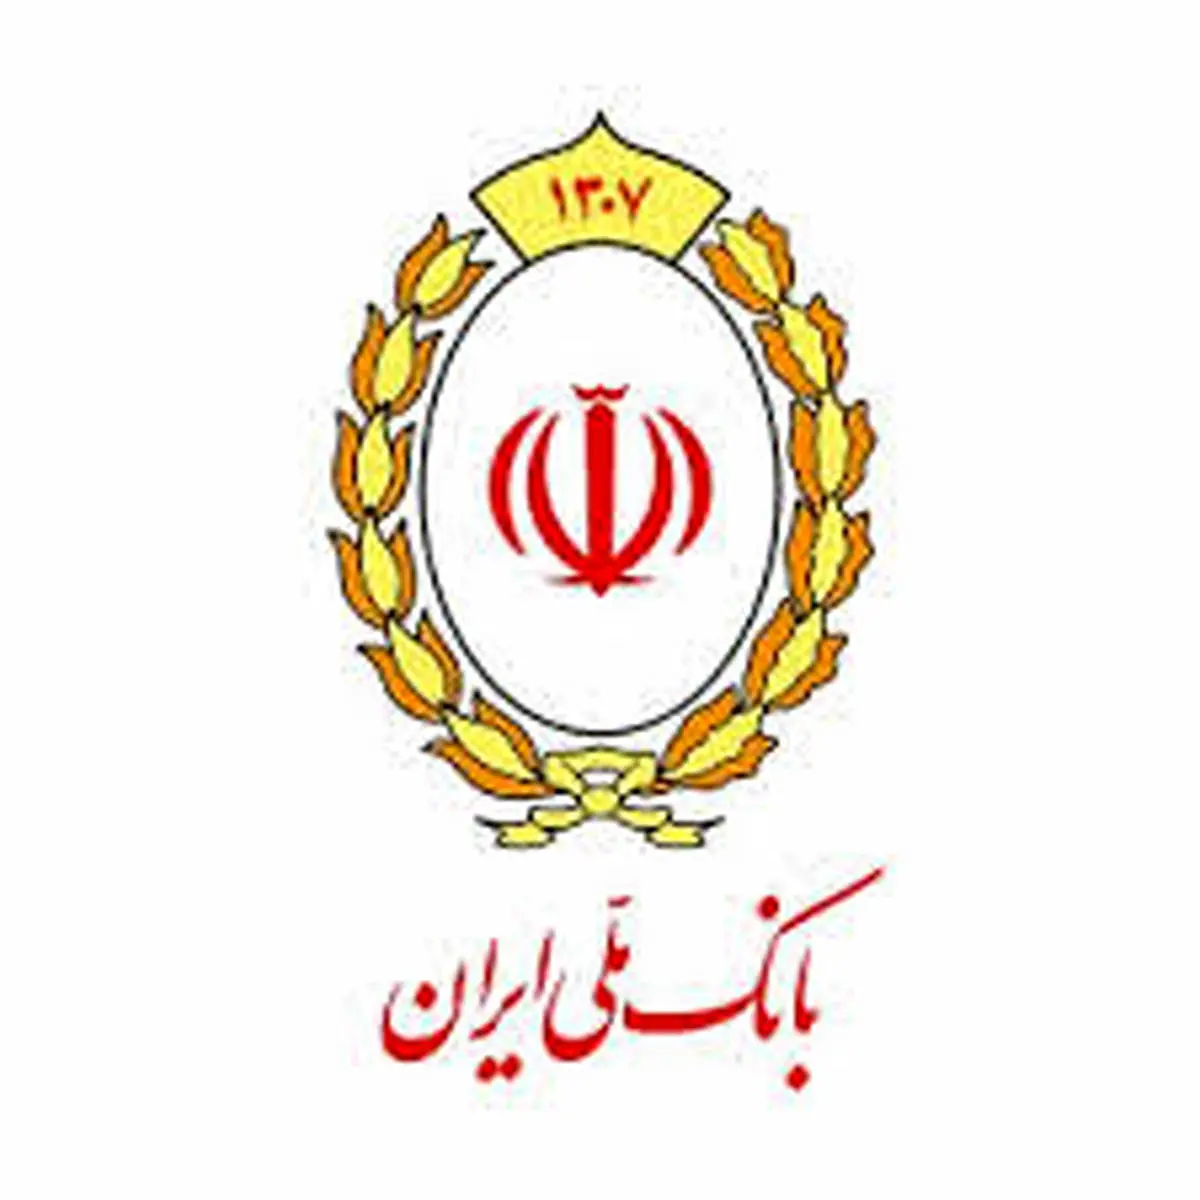 سپرده گذاری در طرح ویژه مسکن بانک ملی ایران با استقبال روبه رو شد